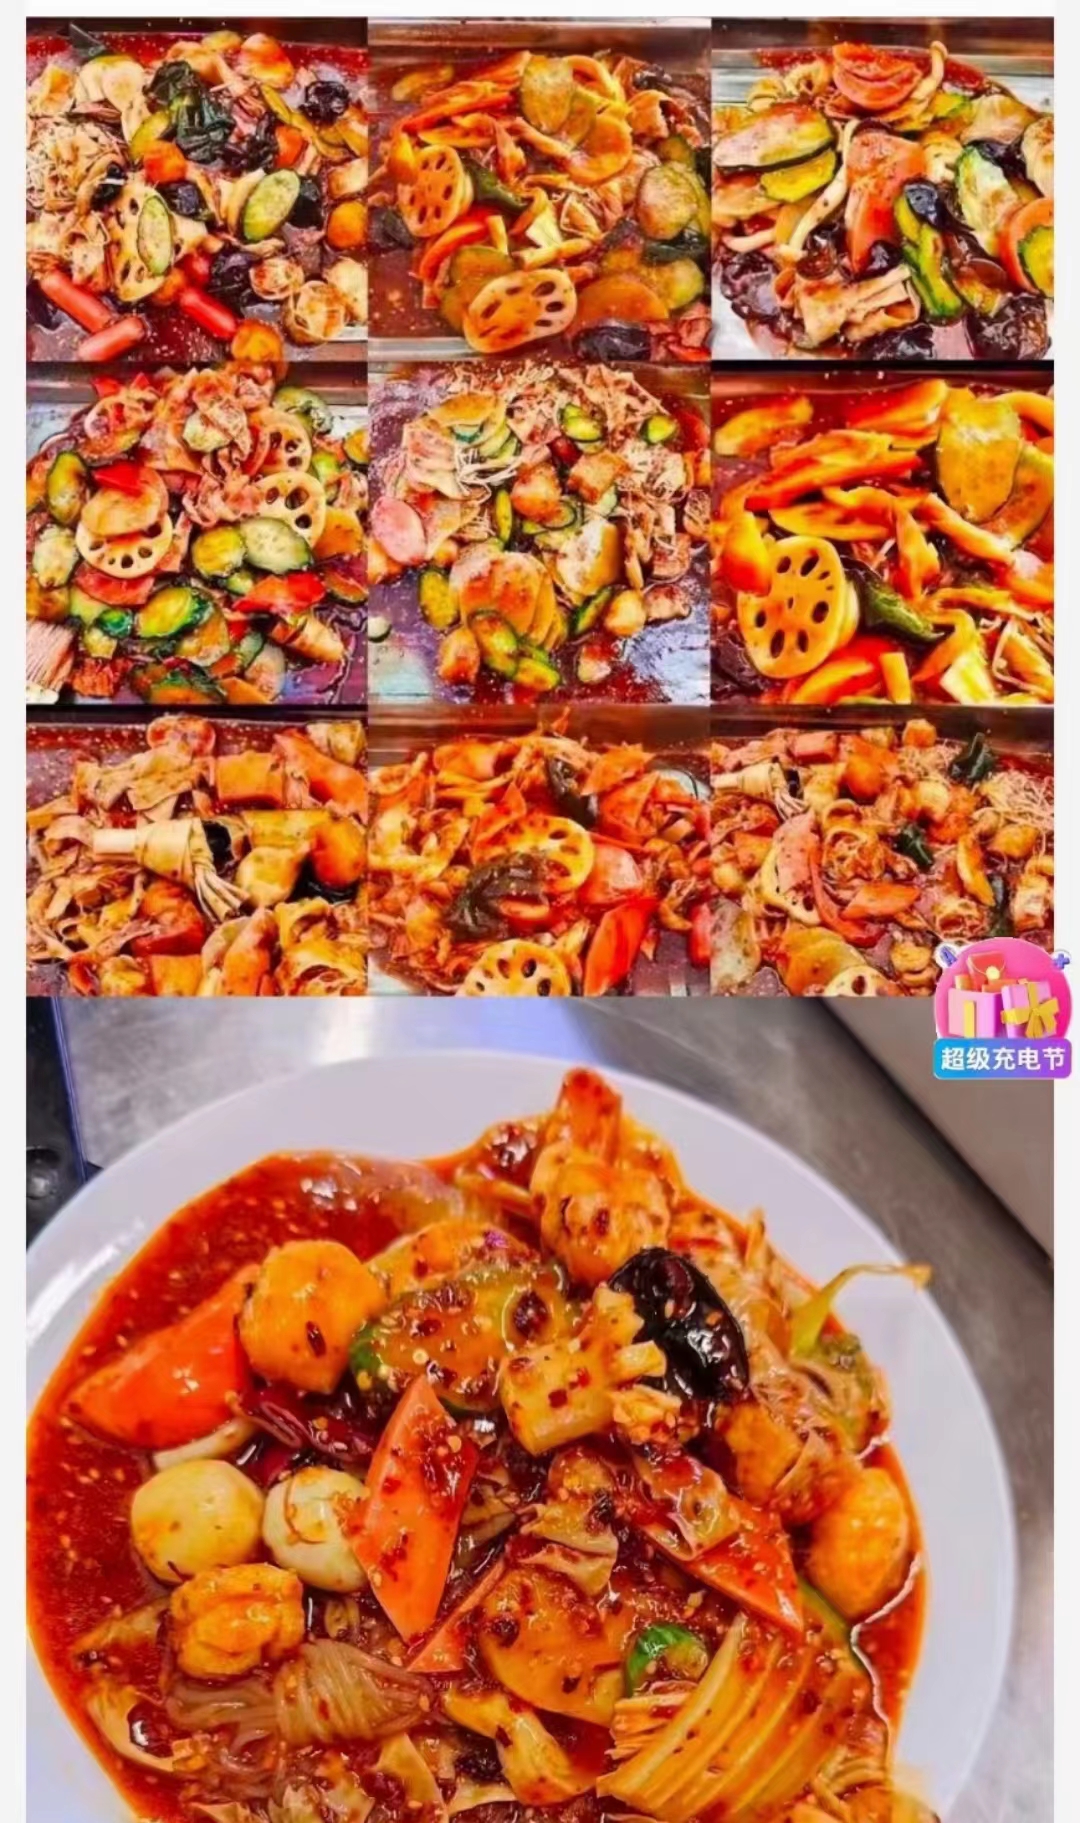 Ah Meng Bah Kut Teh Soup Spices (70g) 阿明肉骨茶料理包